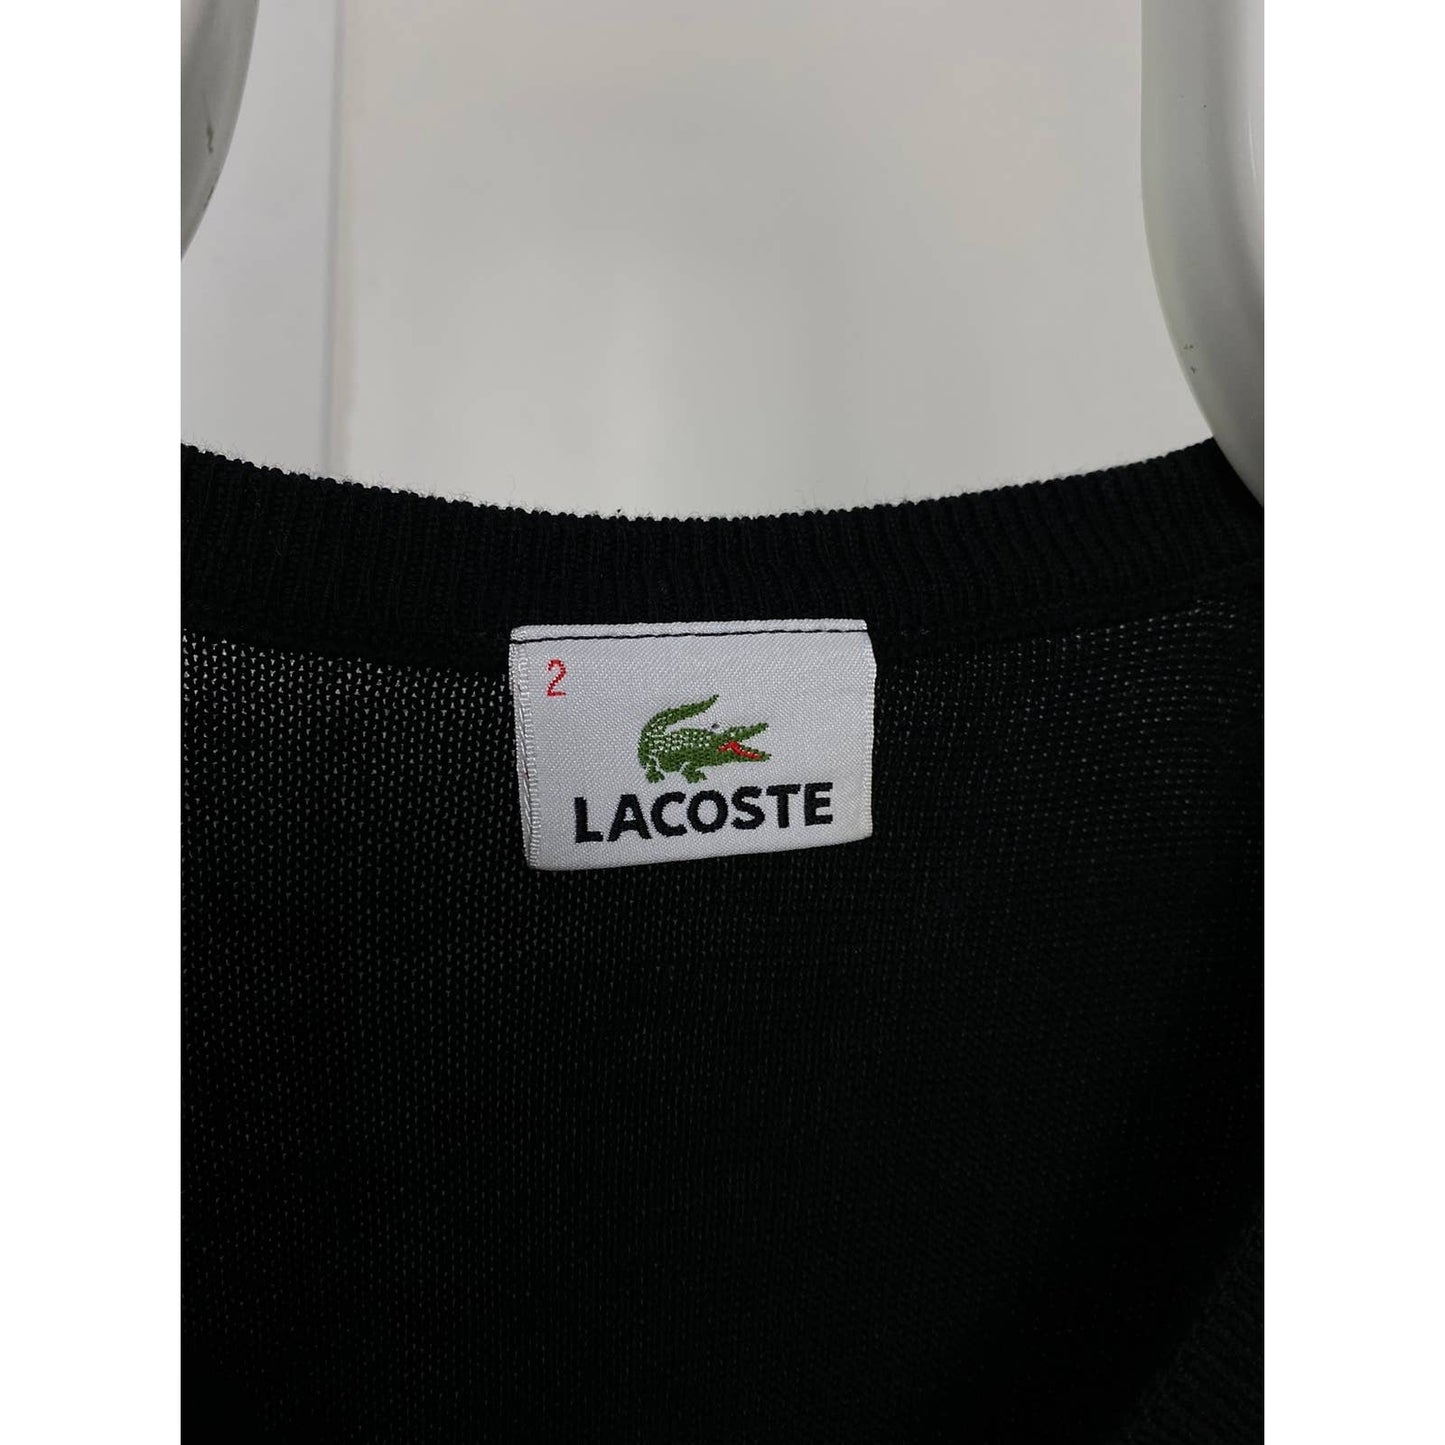 Lacoste vintage black sweater woollen vest small logo